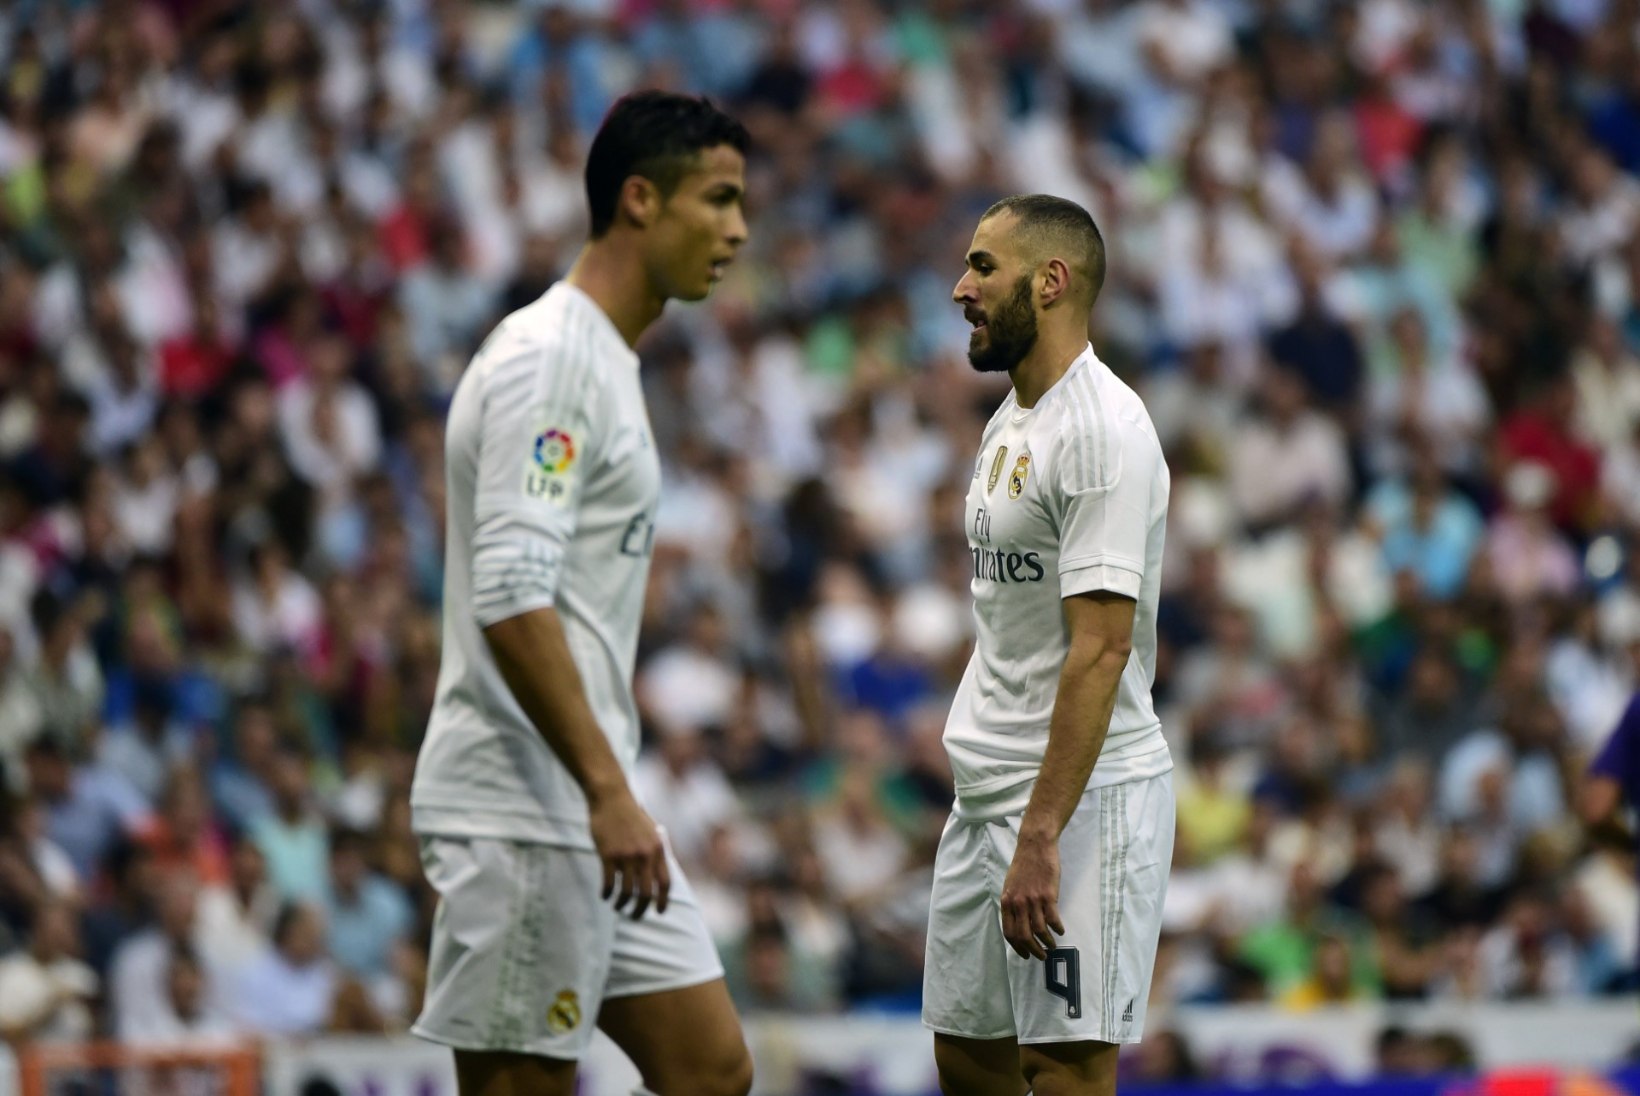 Madridi Reali superstaar arreteeriti - kas mees tögas kolleegi või oli tegu väljapressimisega?